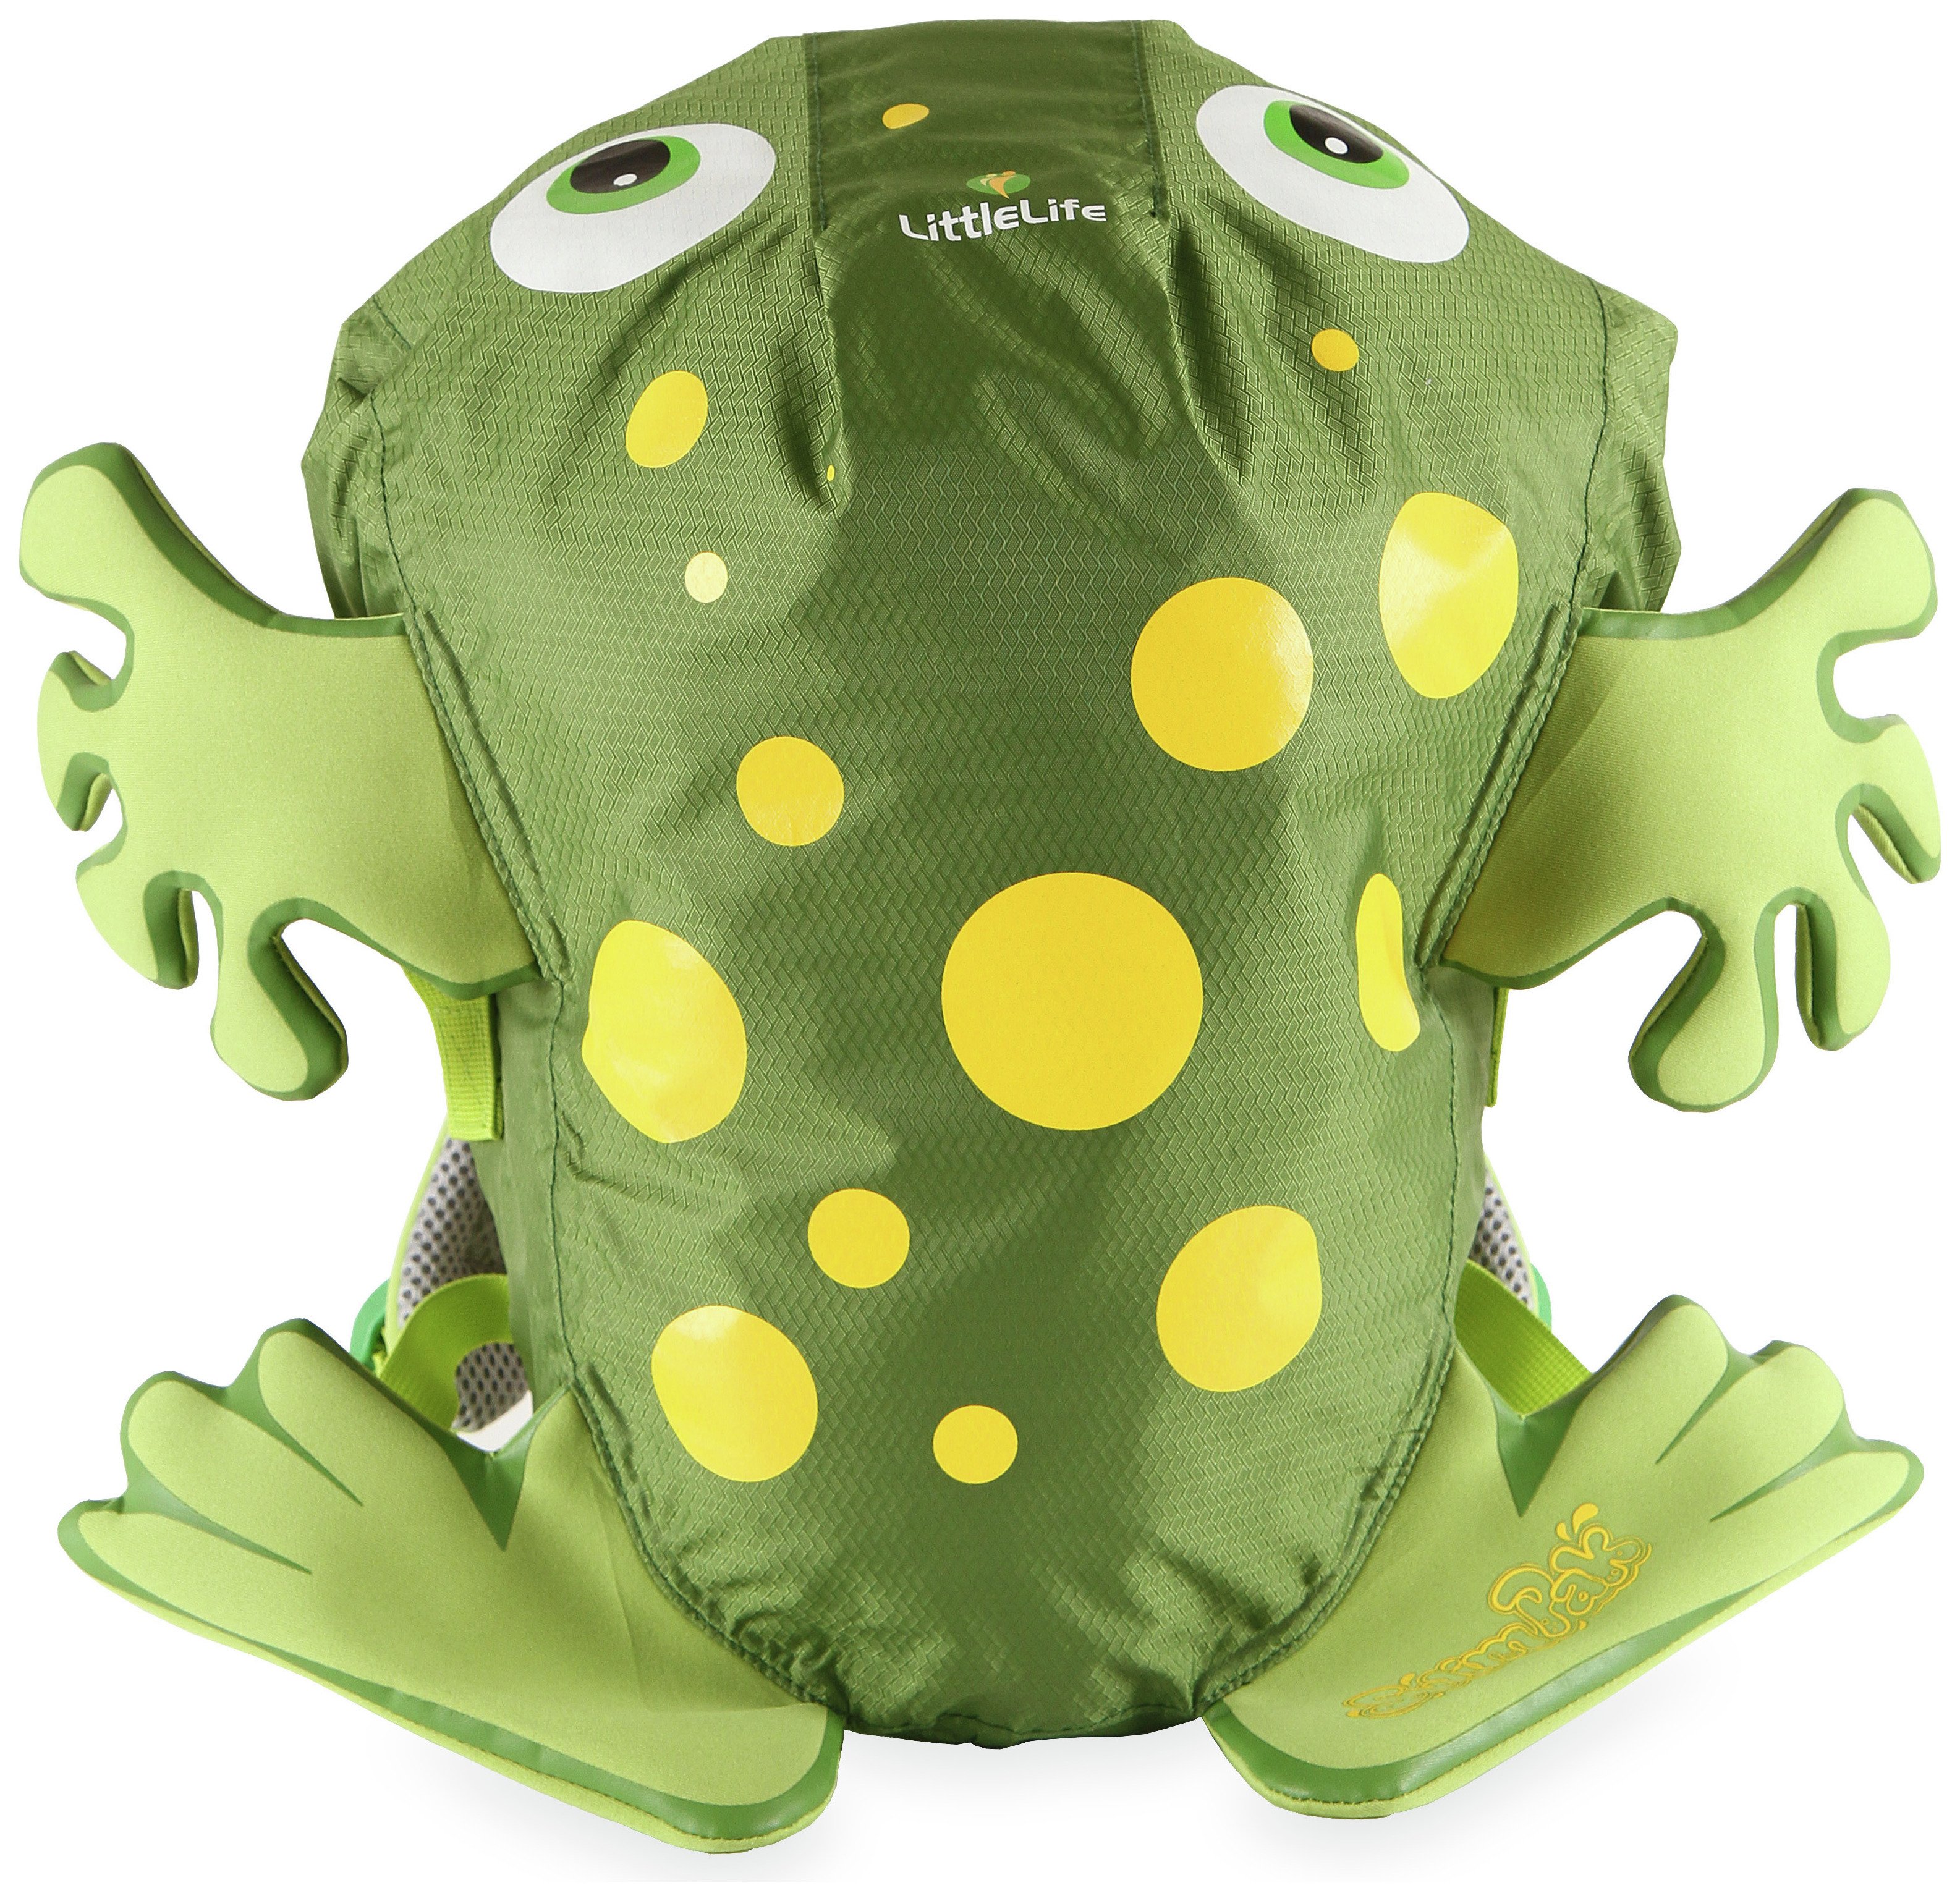 LittleLife Animal Kids Swimpak - Green Frog